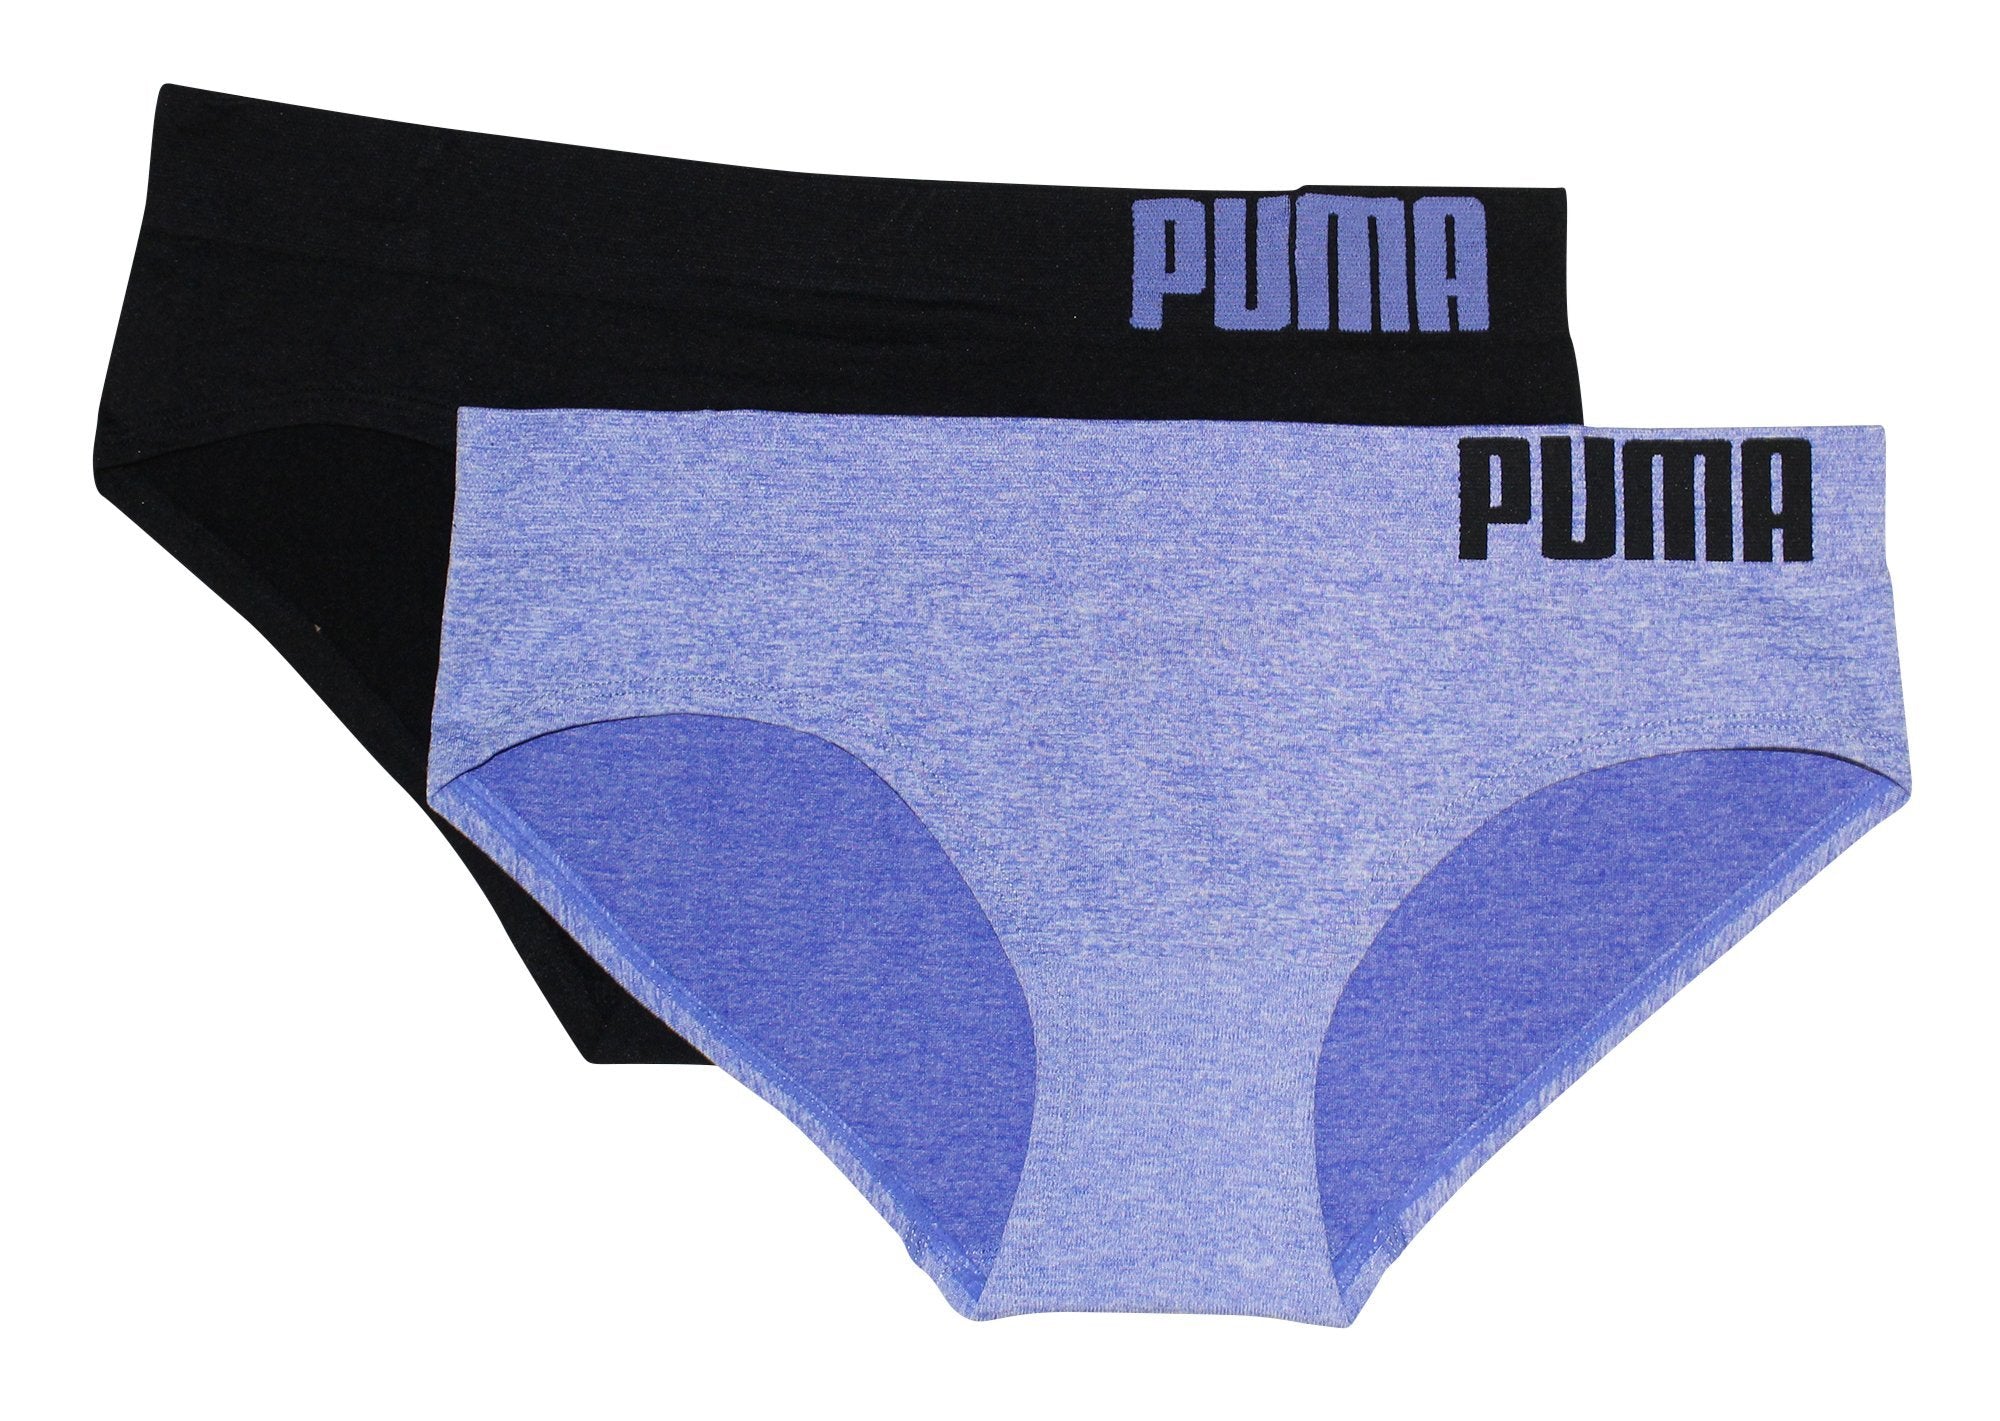 PUMA Genuine Puma Bikini Underwear Soft Sexy Triangular Cup Thin